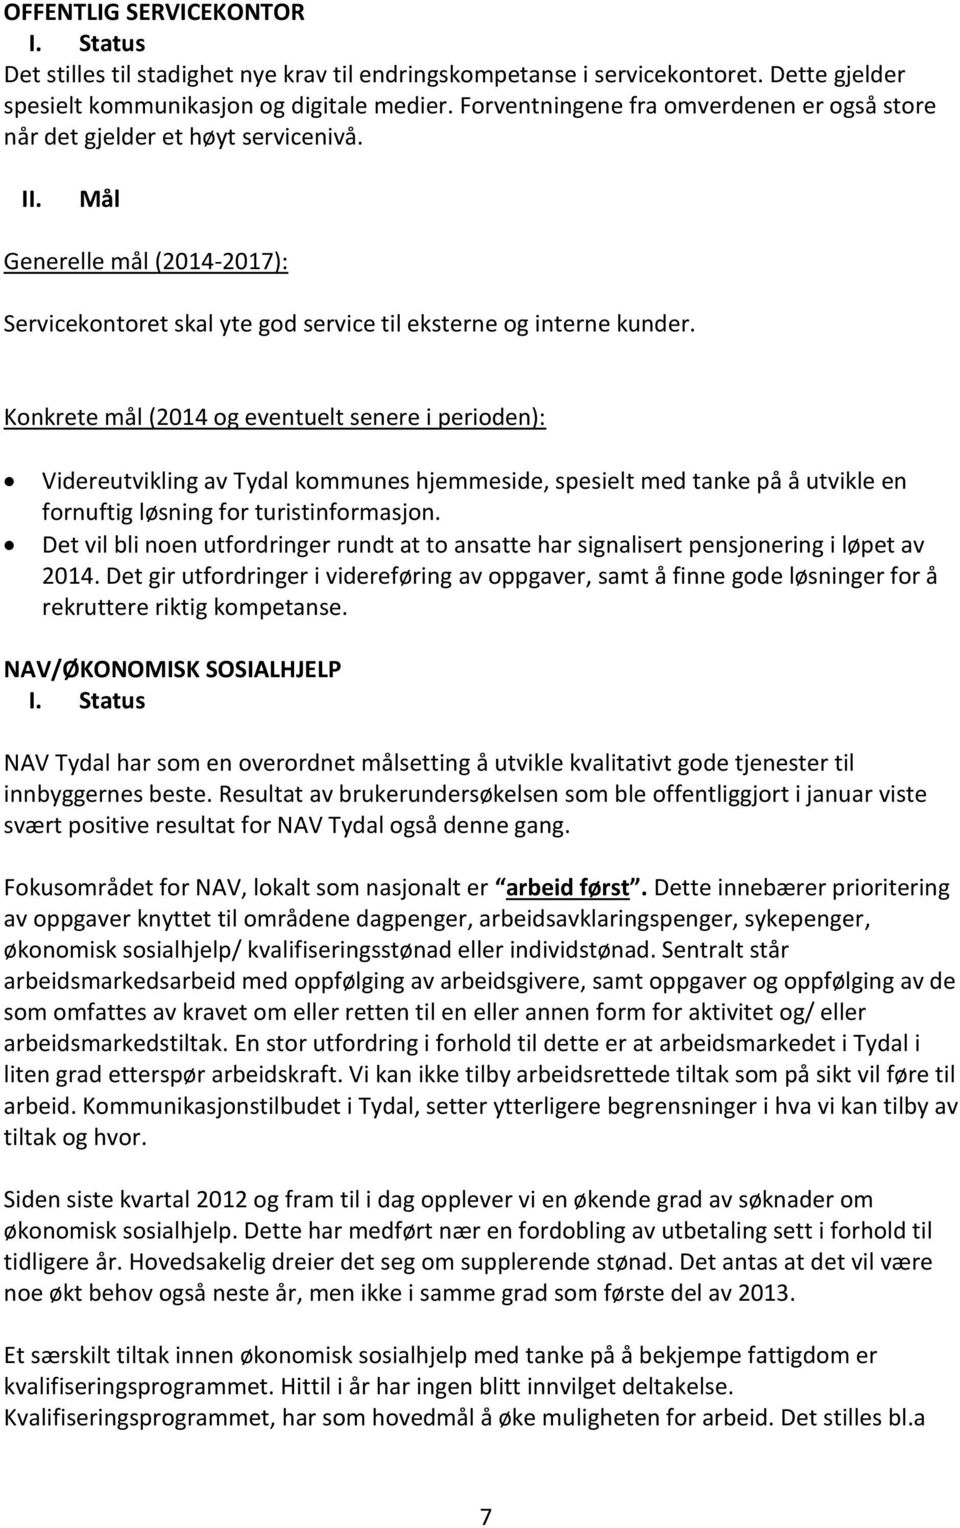 Konkrete mål (2014 og eventuelt senere i perioden): Videreutvikling av Tydal kommunes hjemmeside, spesielt med tanke på å utvikle en fornuftig løsning for turistinformasjon.